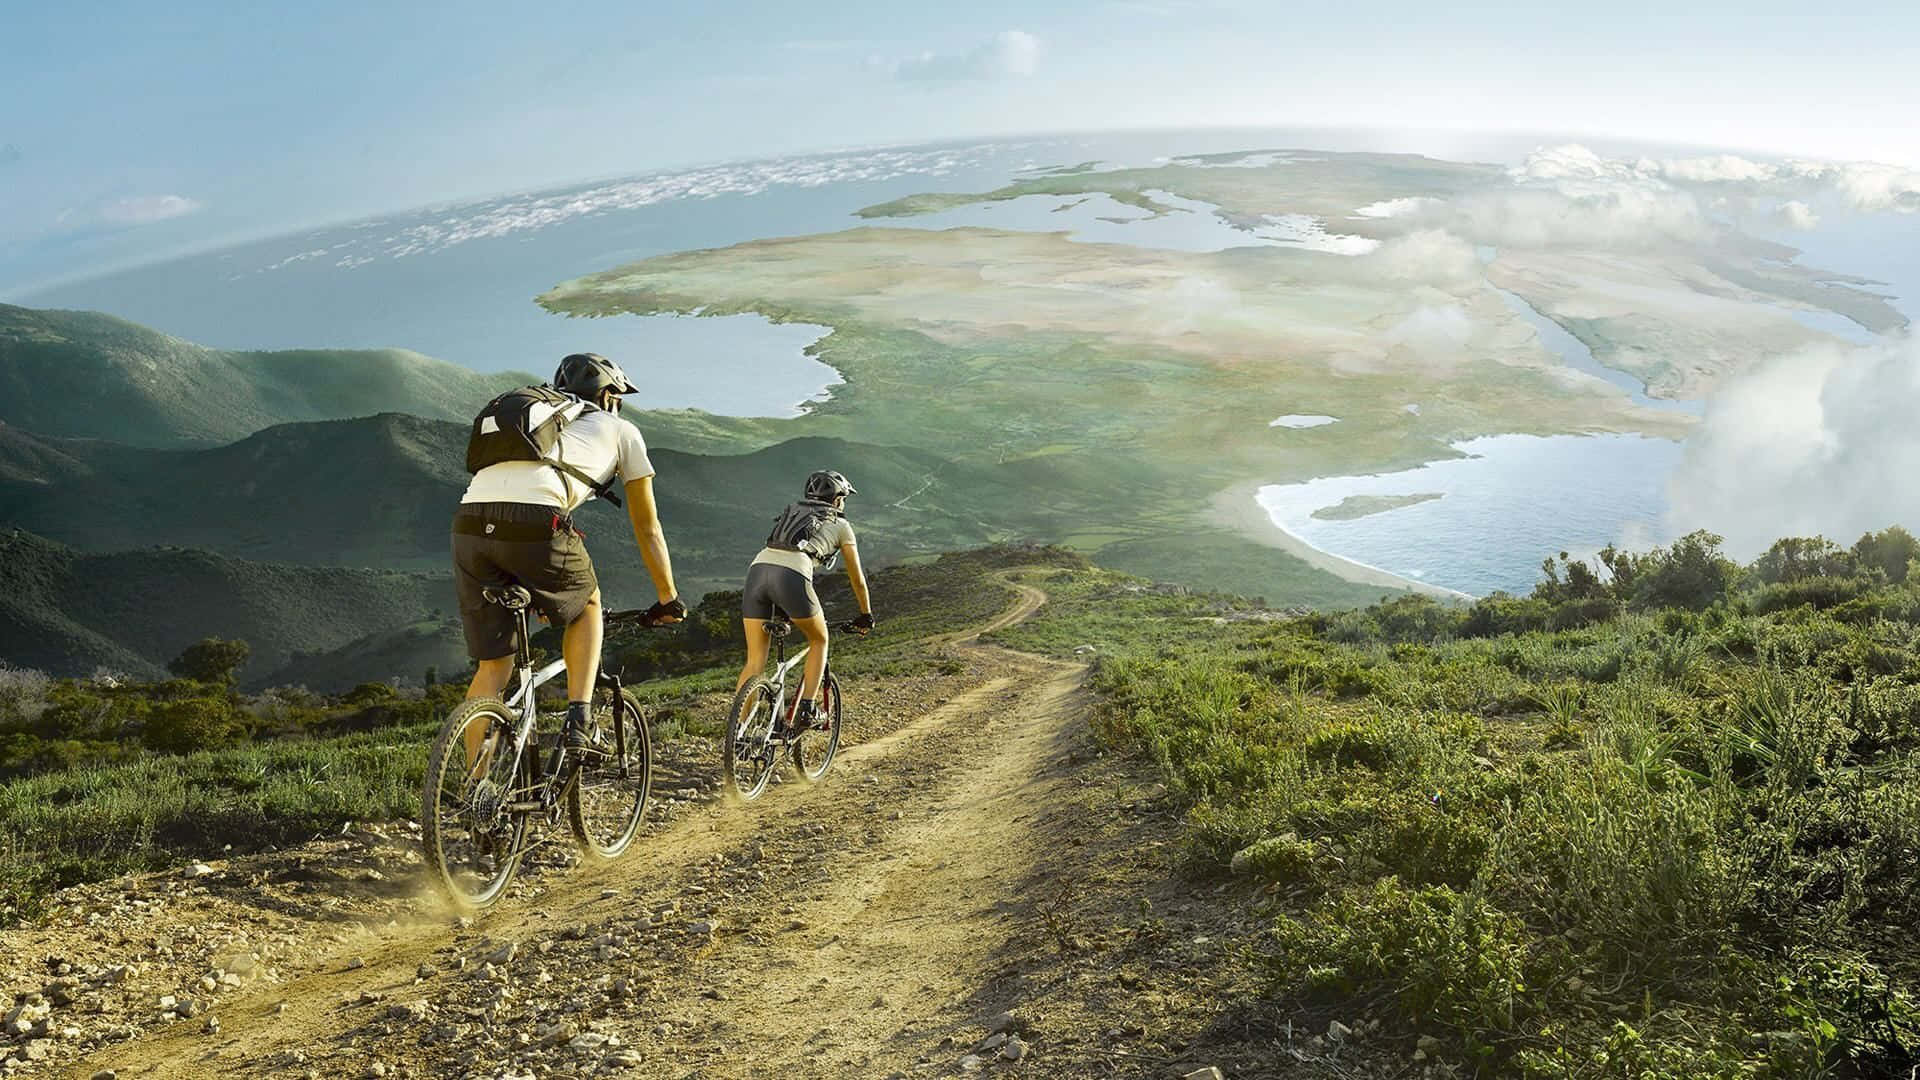 Tomountainbikere Navigerer Sig Gennem Stierne I Et Fantastisk Naturlandskab.